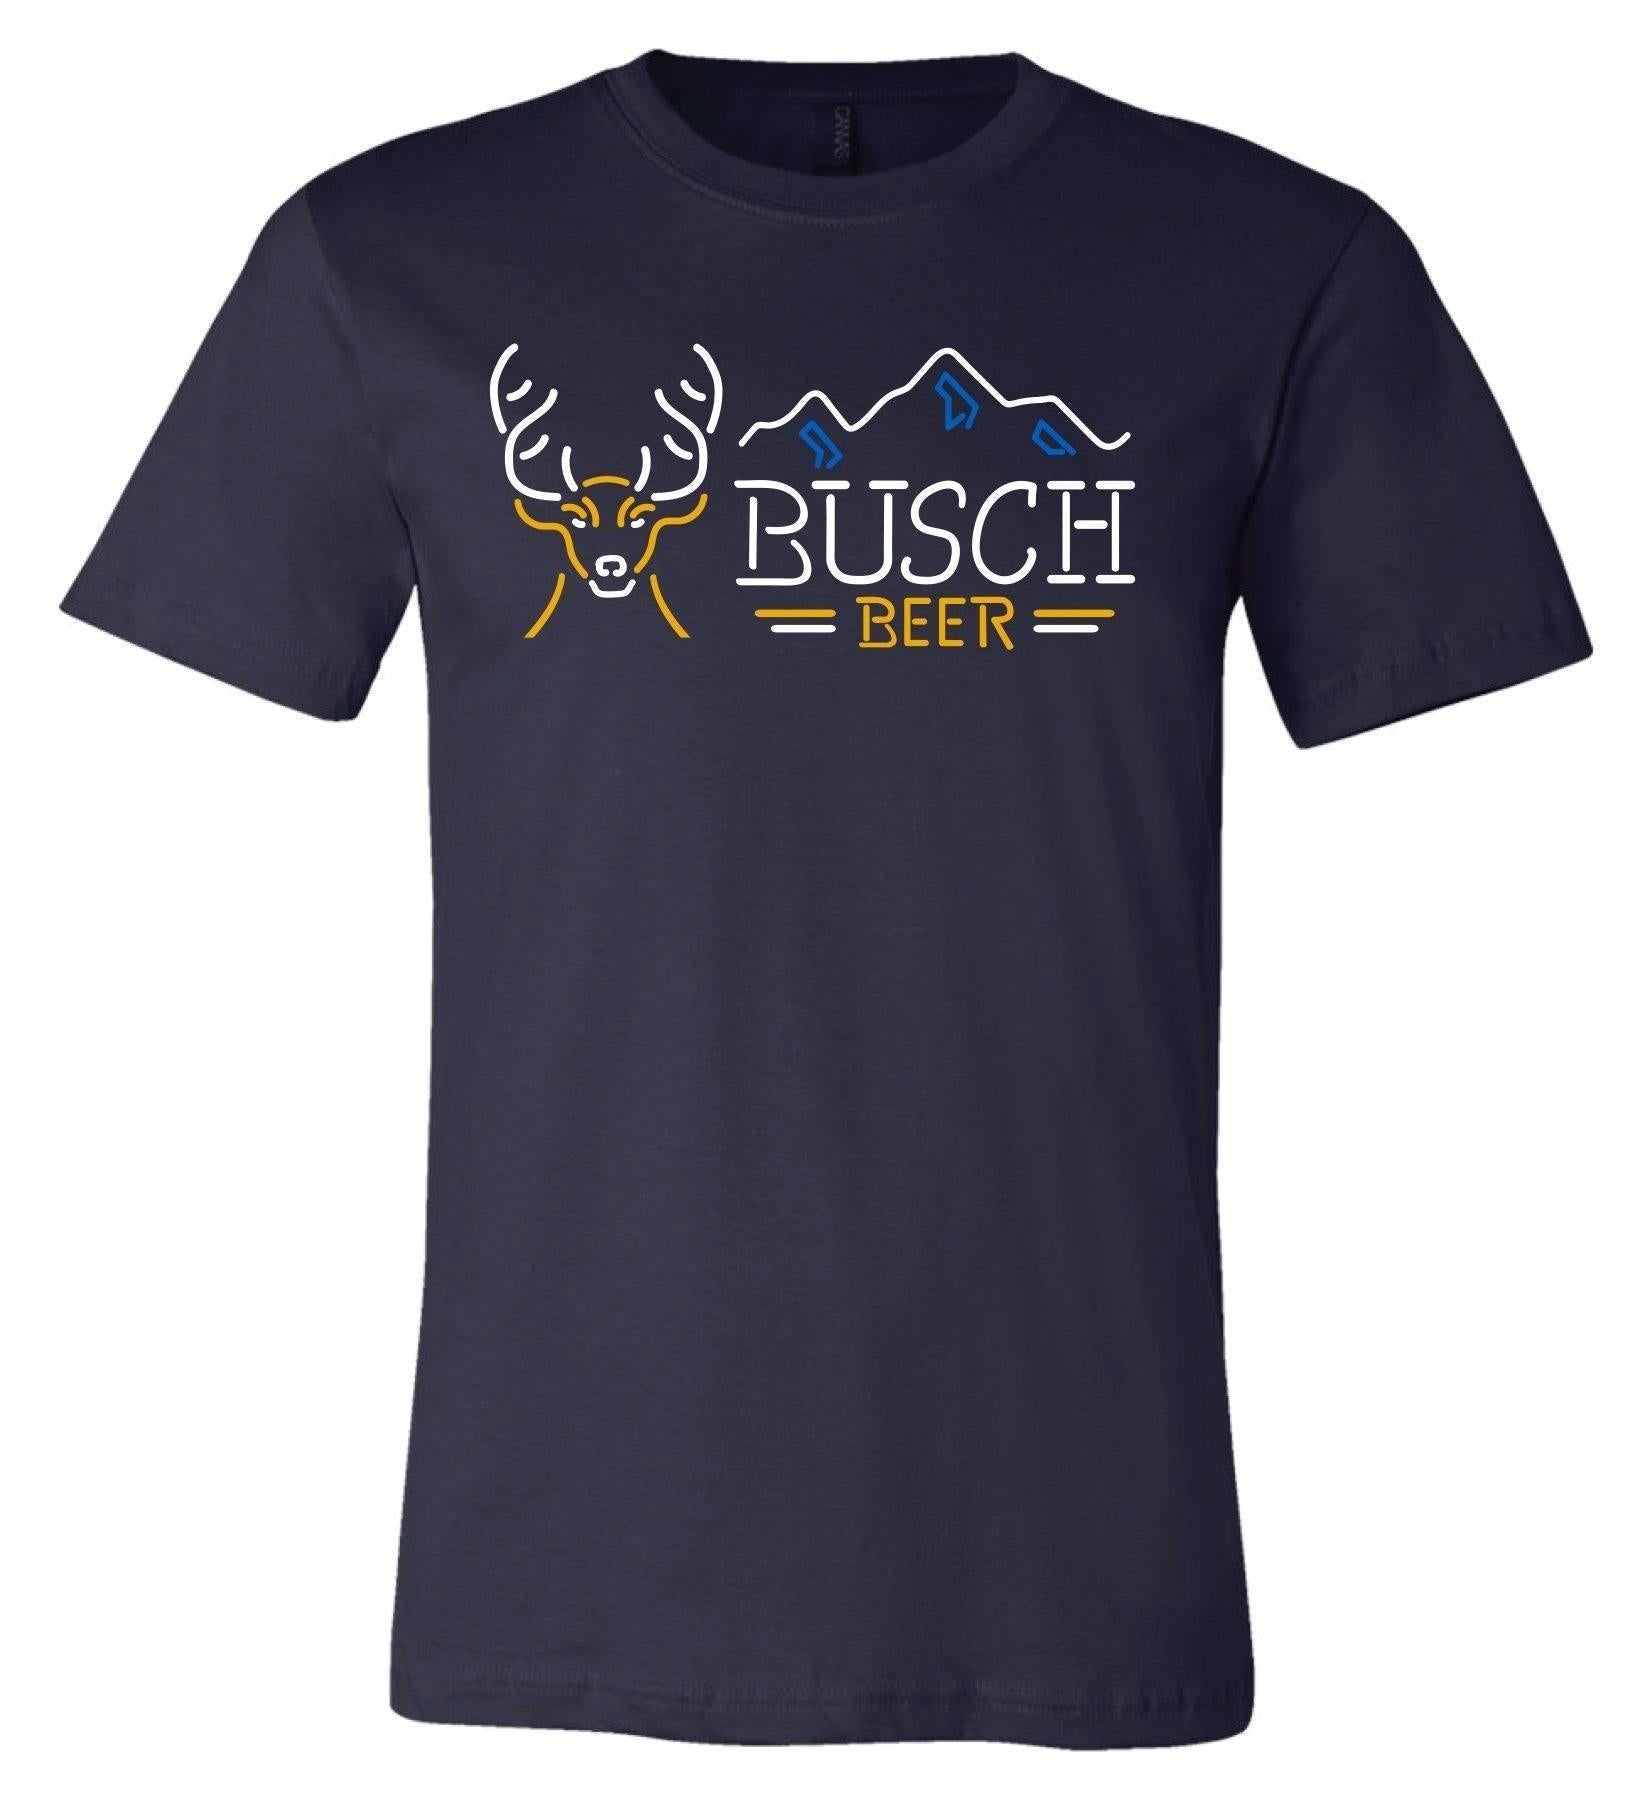 Busch Men's Navy Blue Neon T-shirt